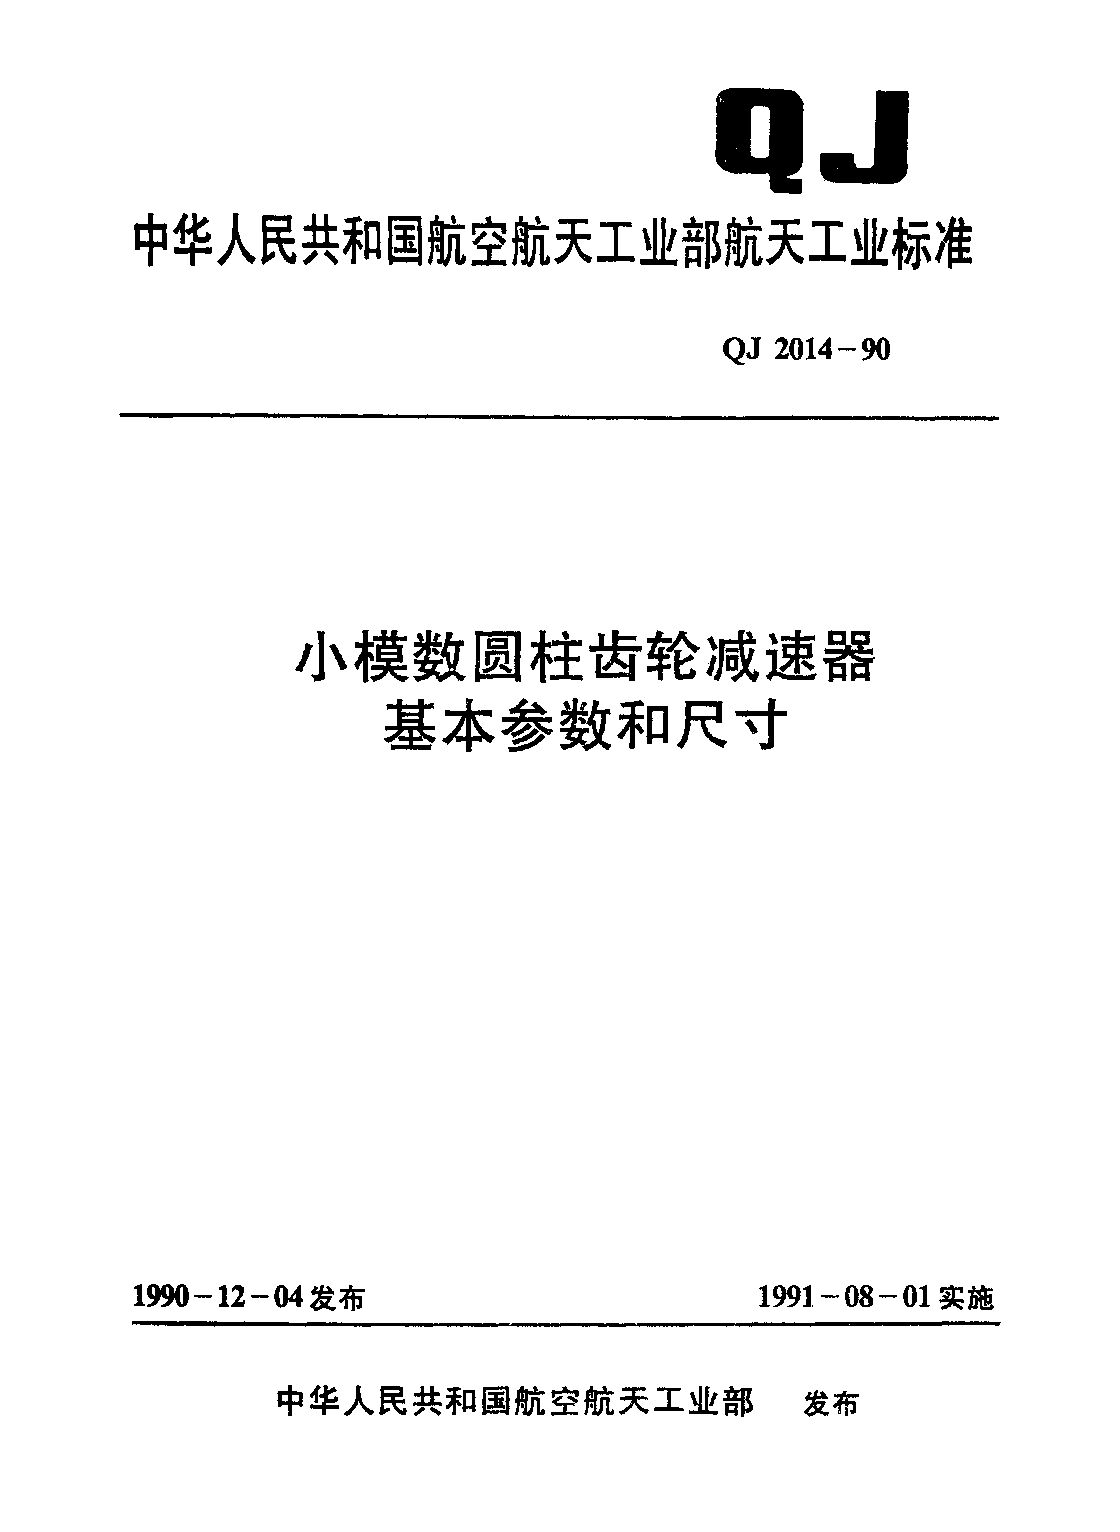 QJ 2014-1990封面图